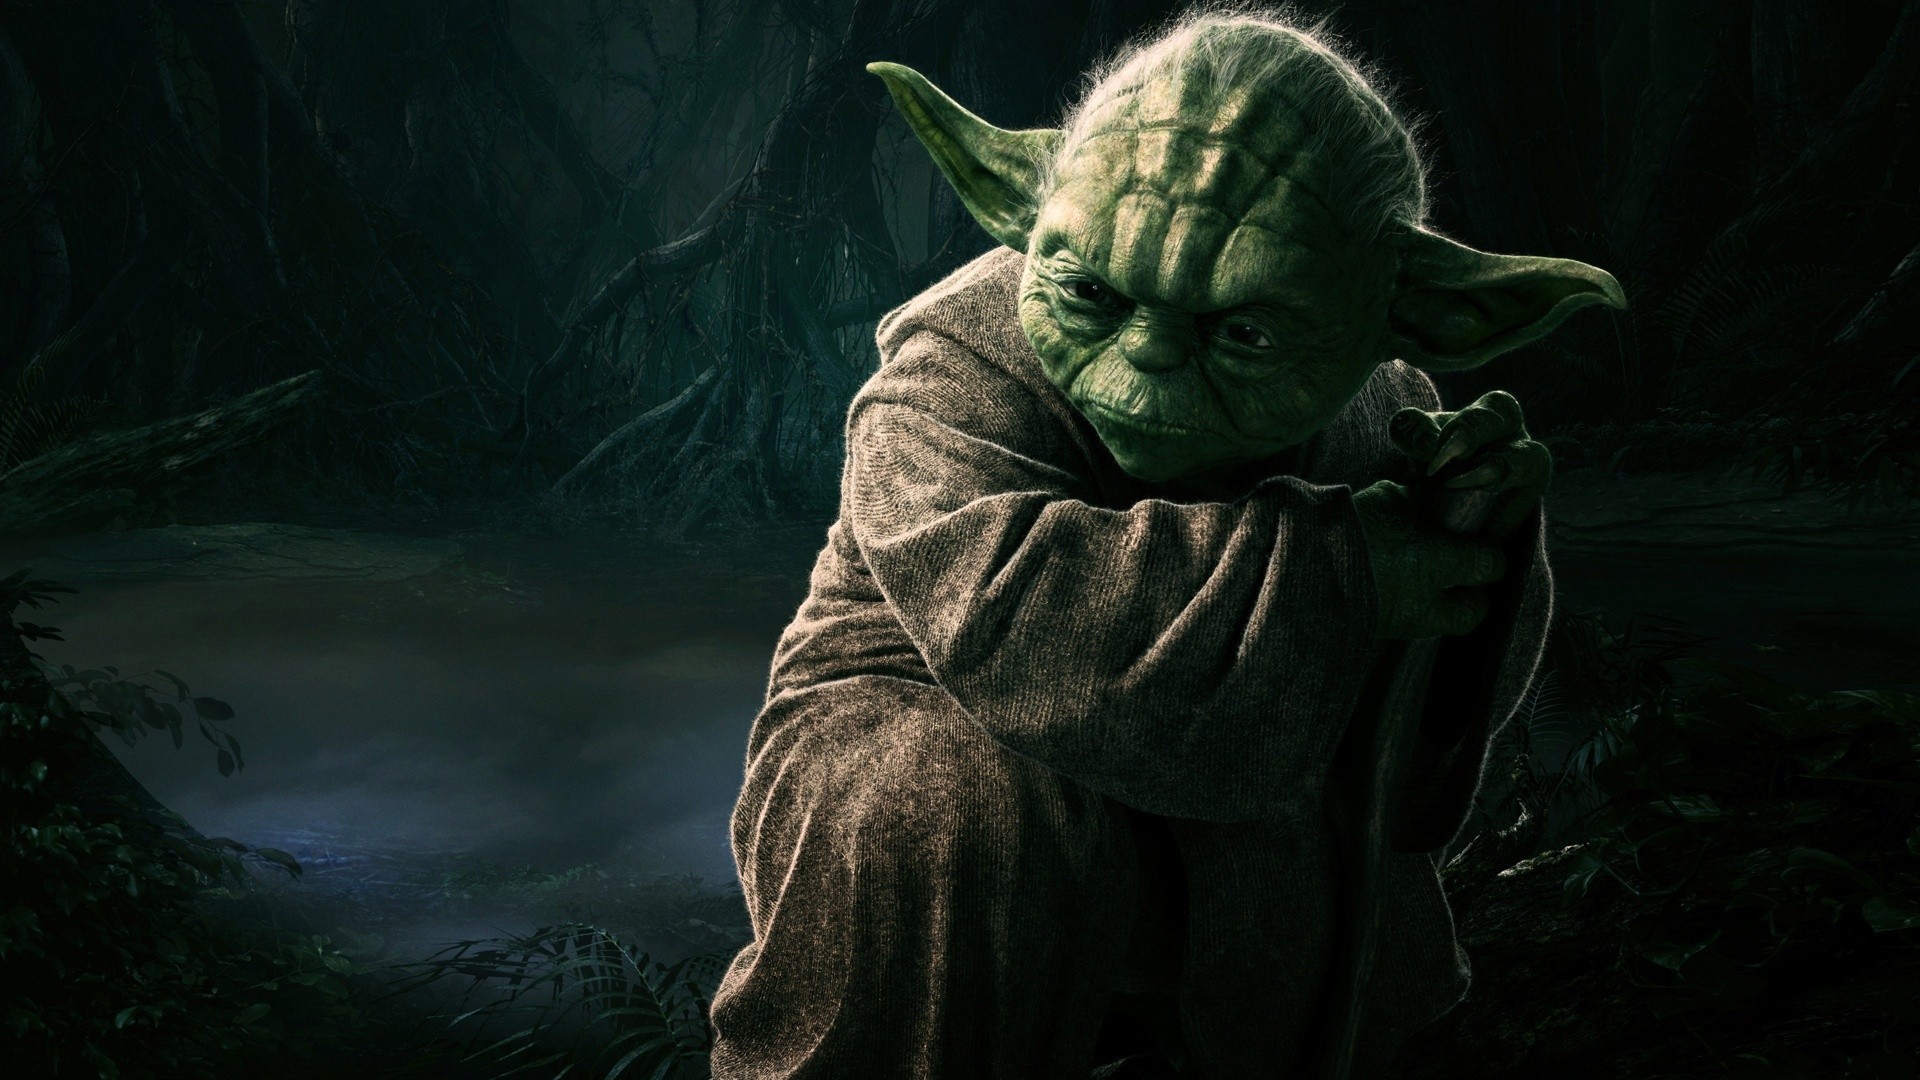 Star Wars Yoda Wallpaper